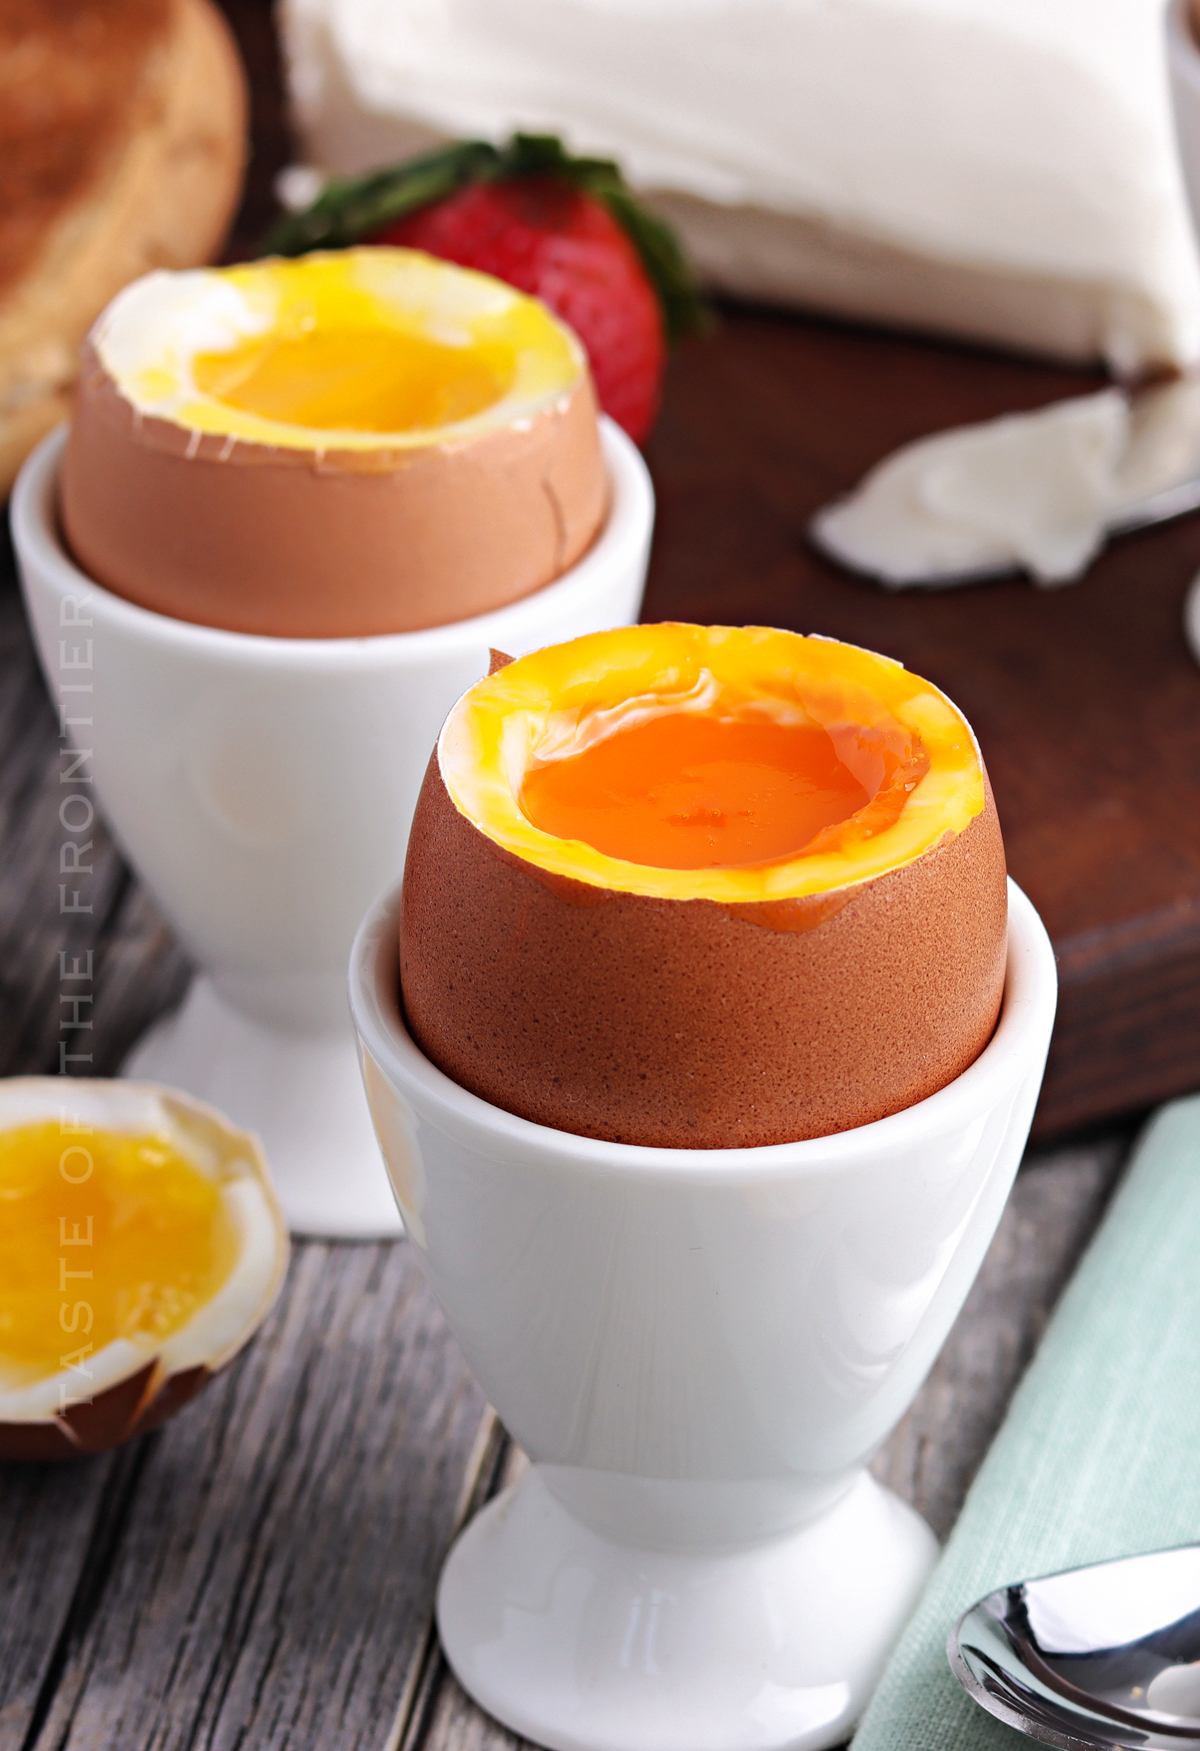 https://www.kleinworthco.com/wp-content/uploads/2022/03/Easy-Soft-Boiled-Eggs-1200.jpg